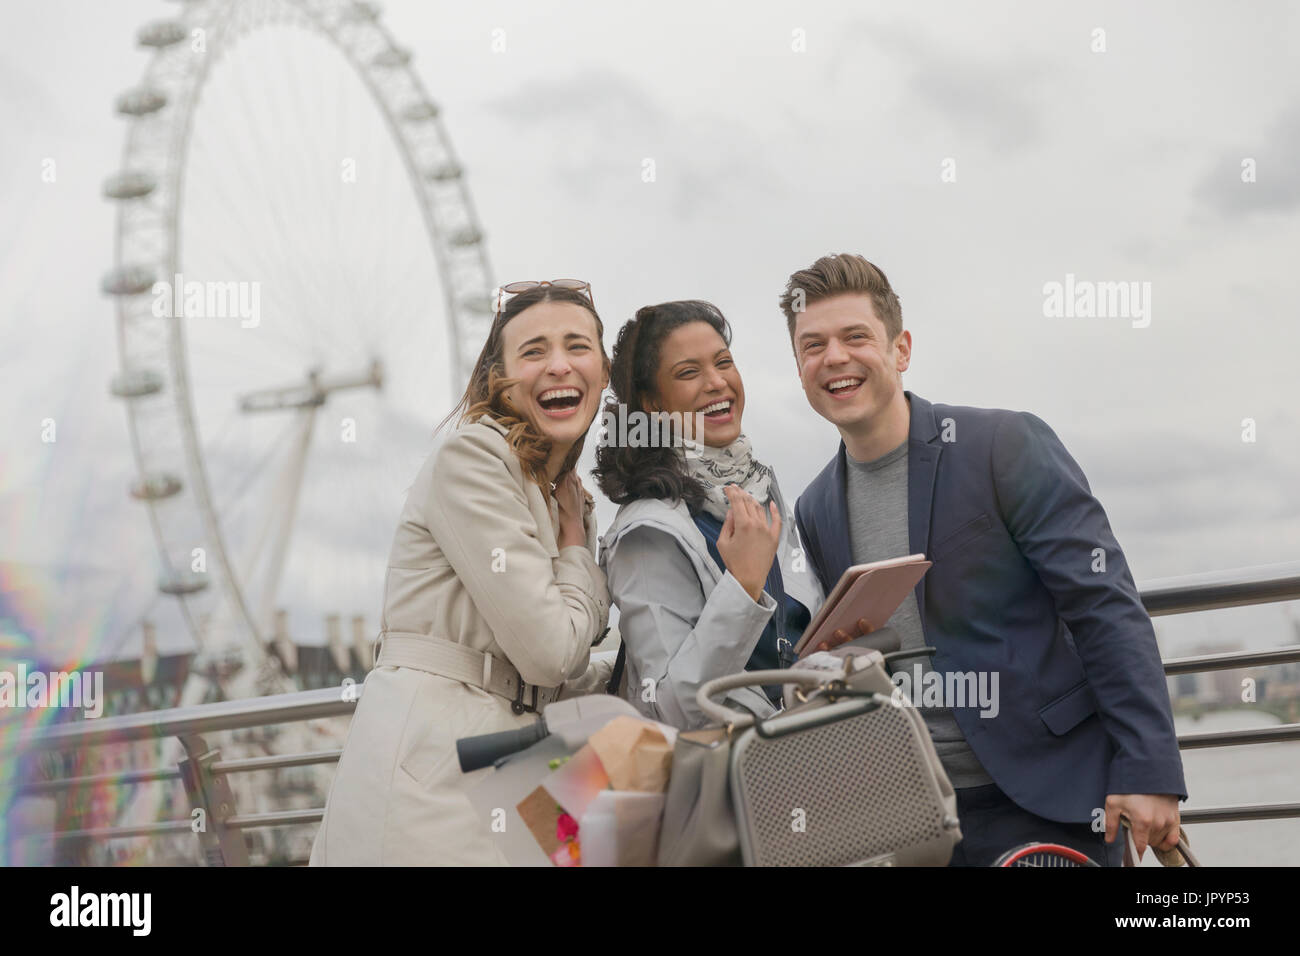 Portrait of laughing friends with digital tablet près de roue du millénaire, London, UK Banque D'Images